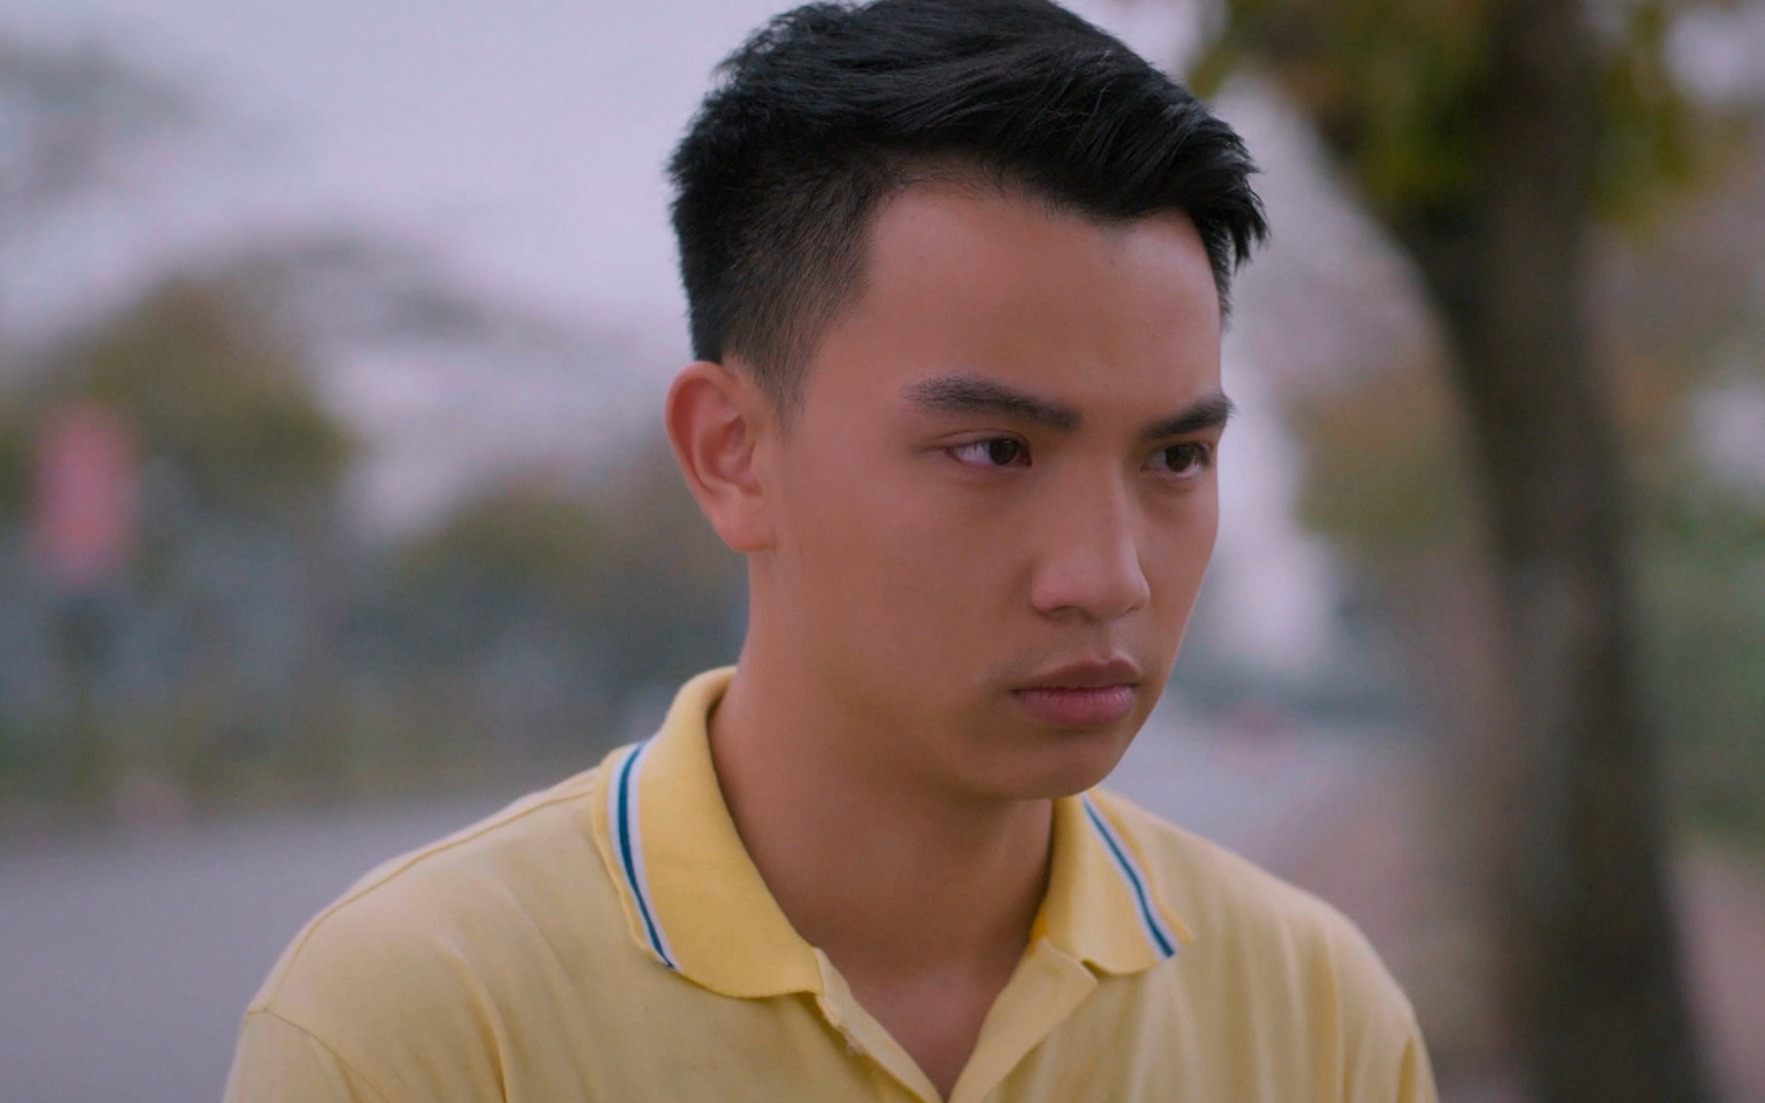 Việt Hoàng nói gì khi Thạch trong phim "Cuộc đời vẫn đẹp sao" khiến khán giả bức xúc?